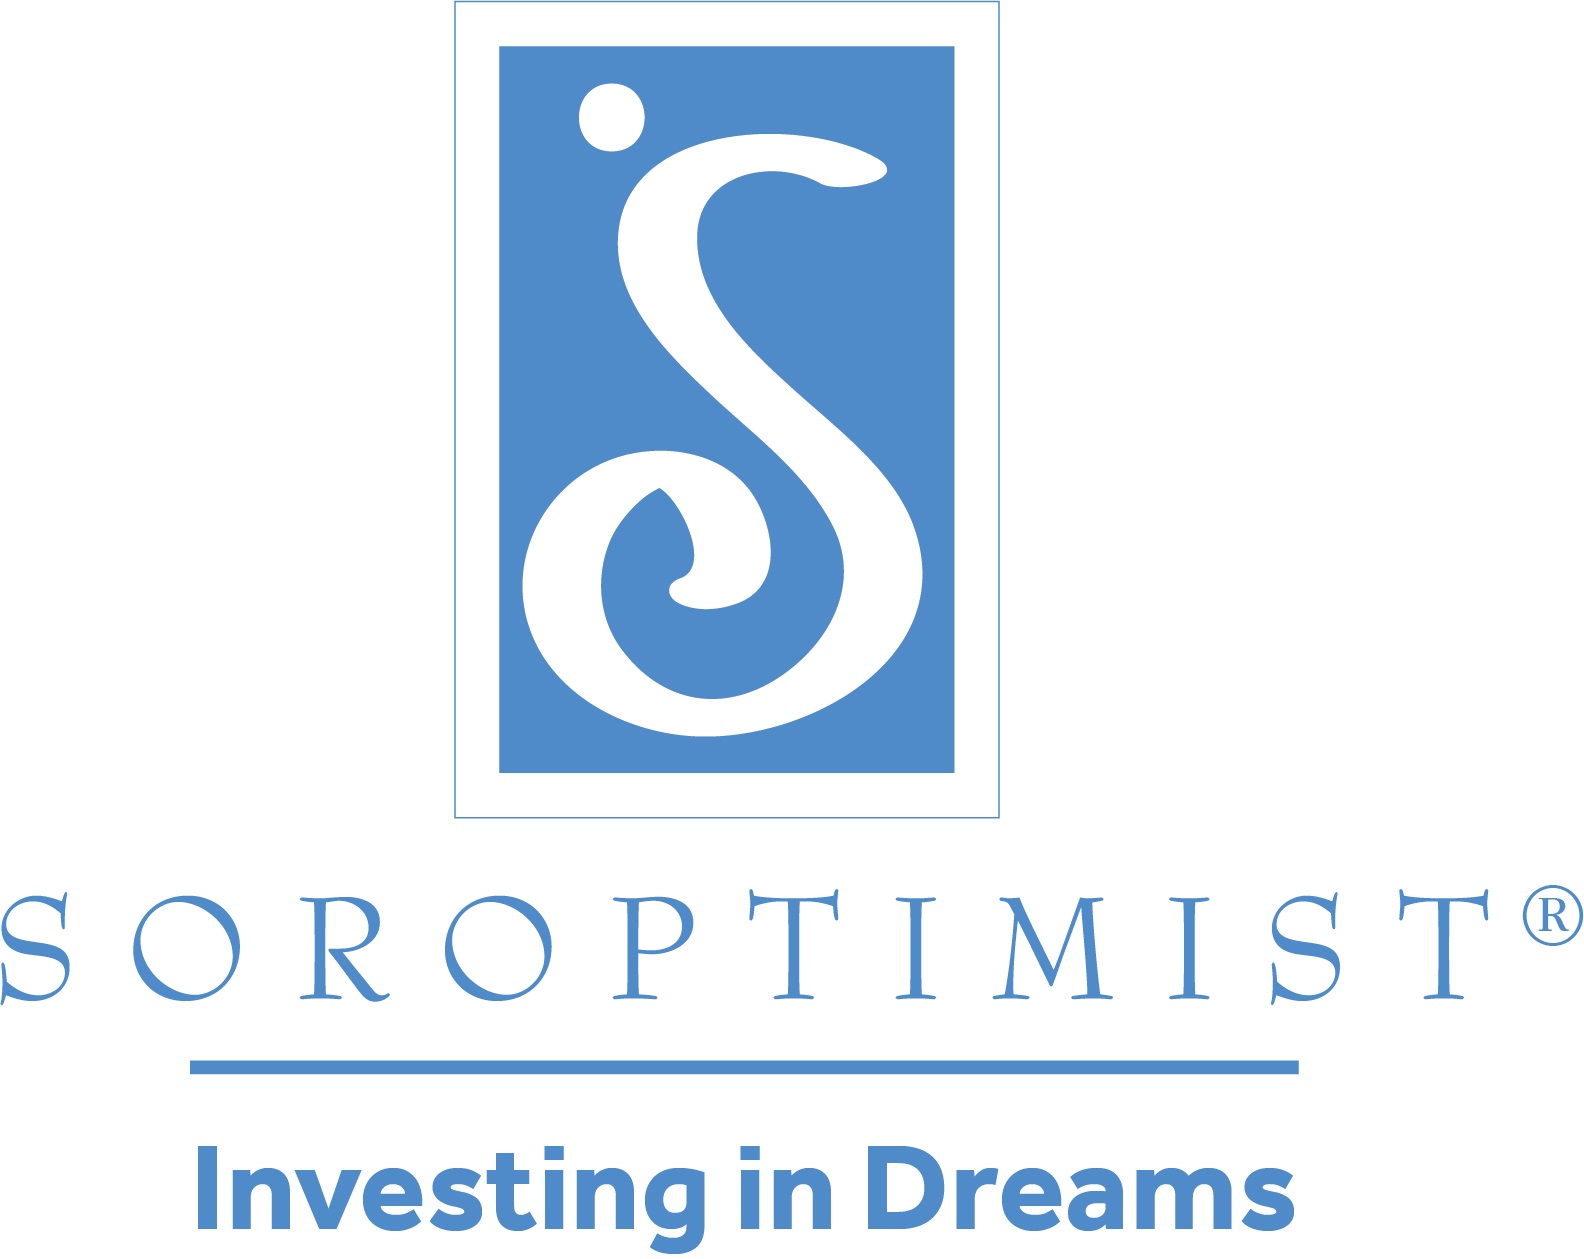 Soroptimist IA logo - investing in dreams